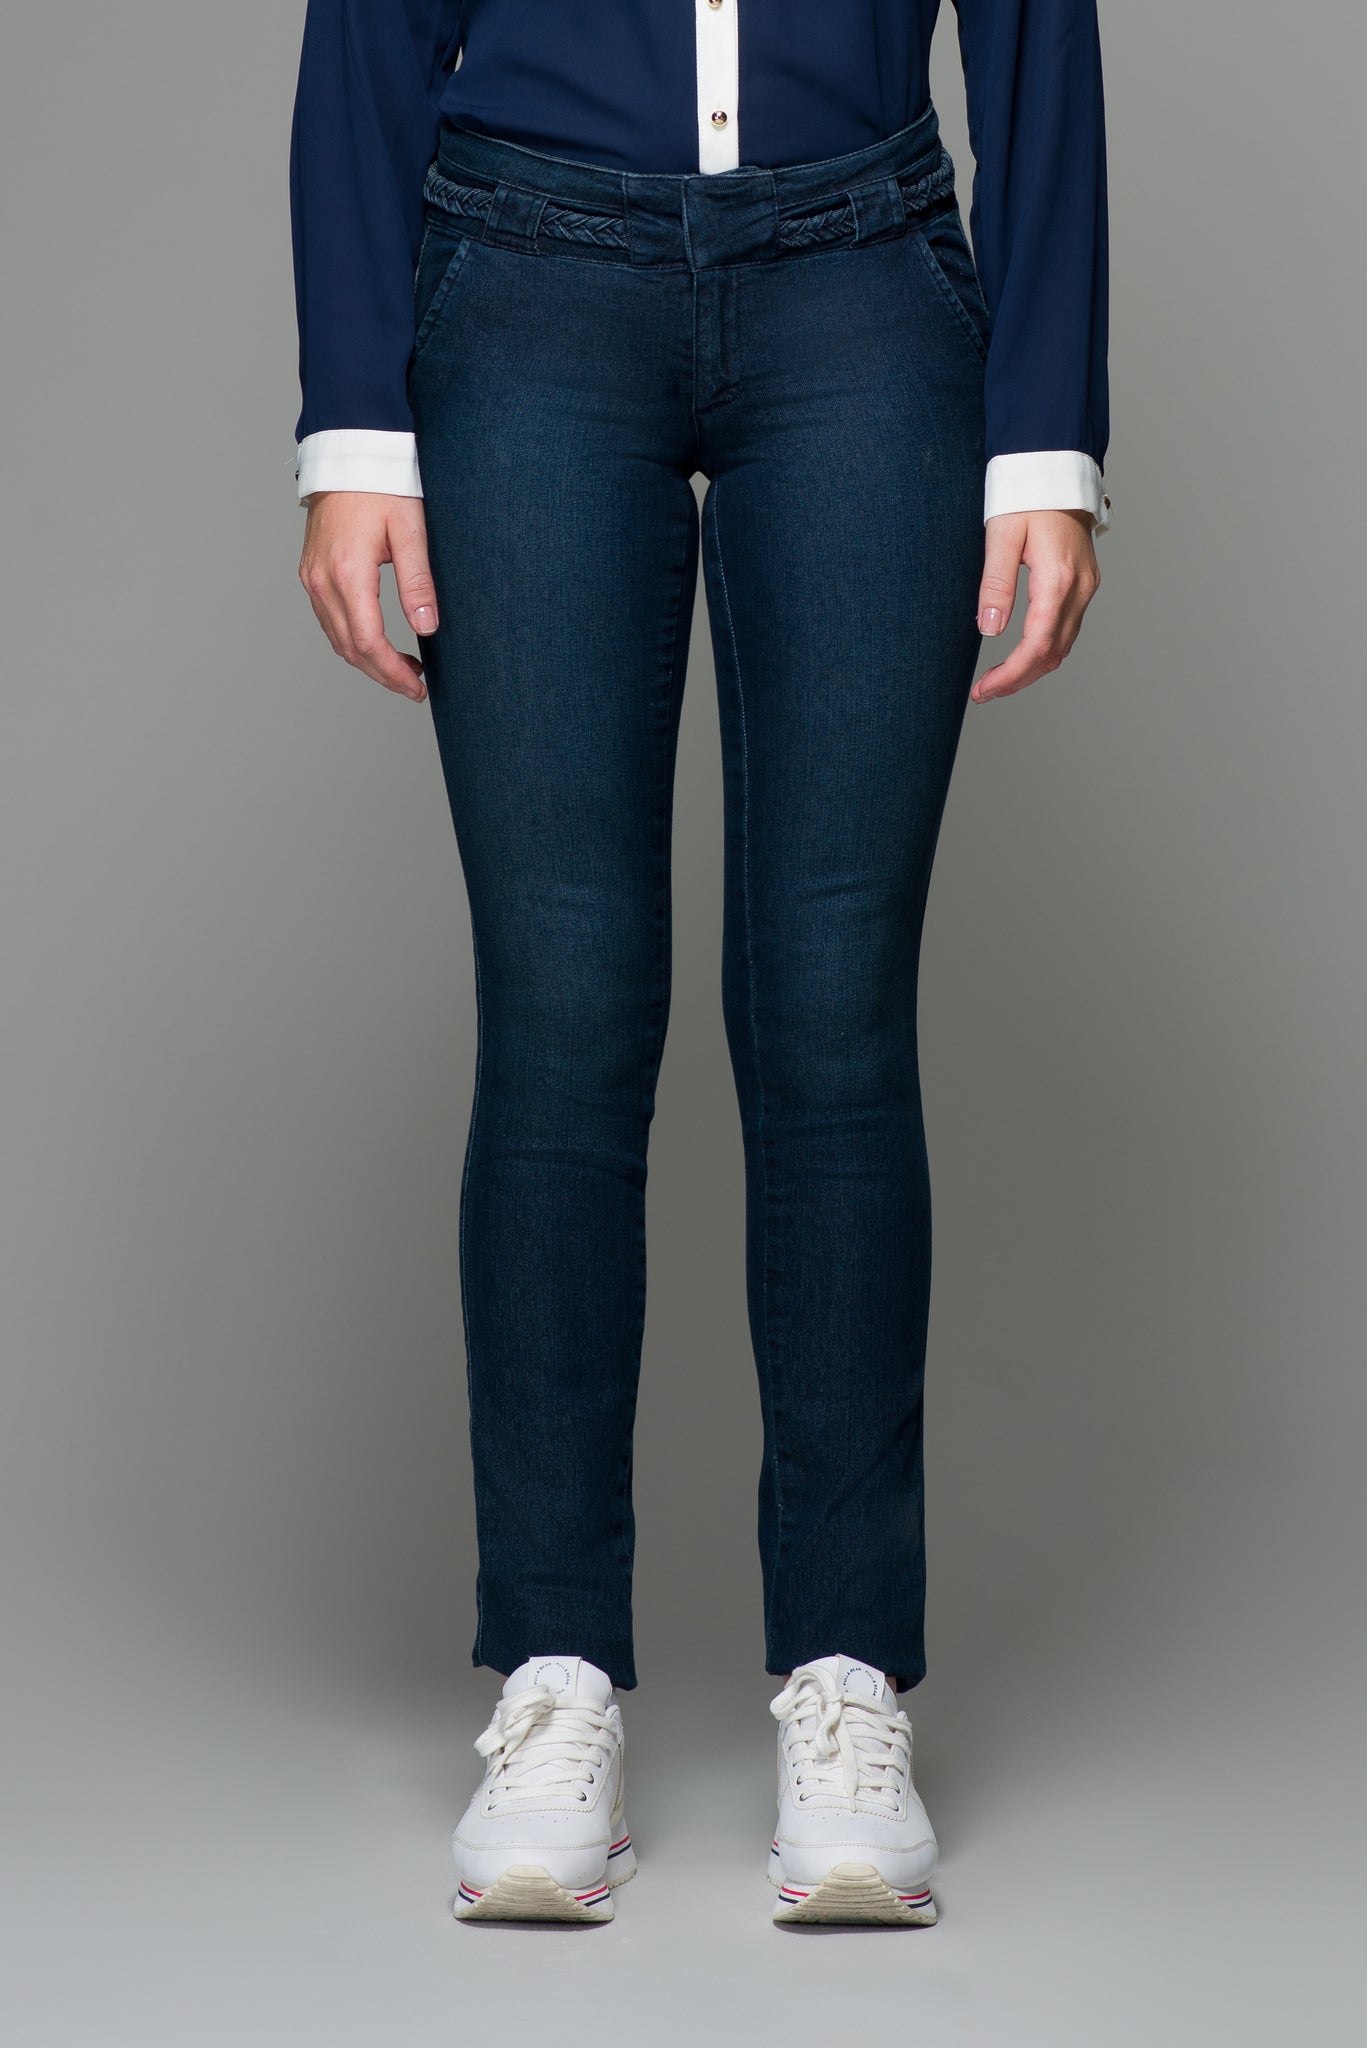 OHPOMP!® Cintura Media Super Skinny Jeans con Cinturón T021